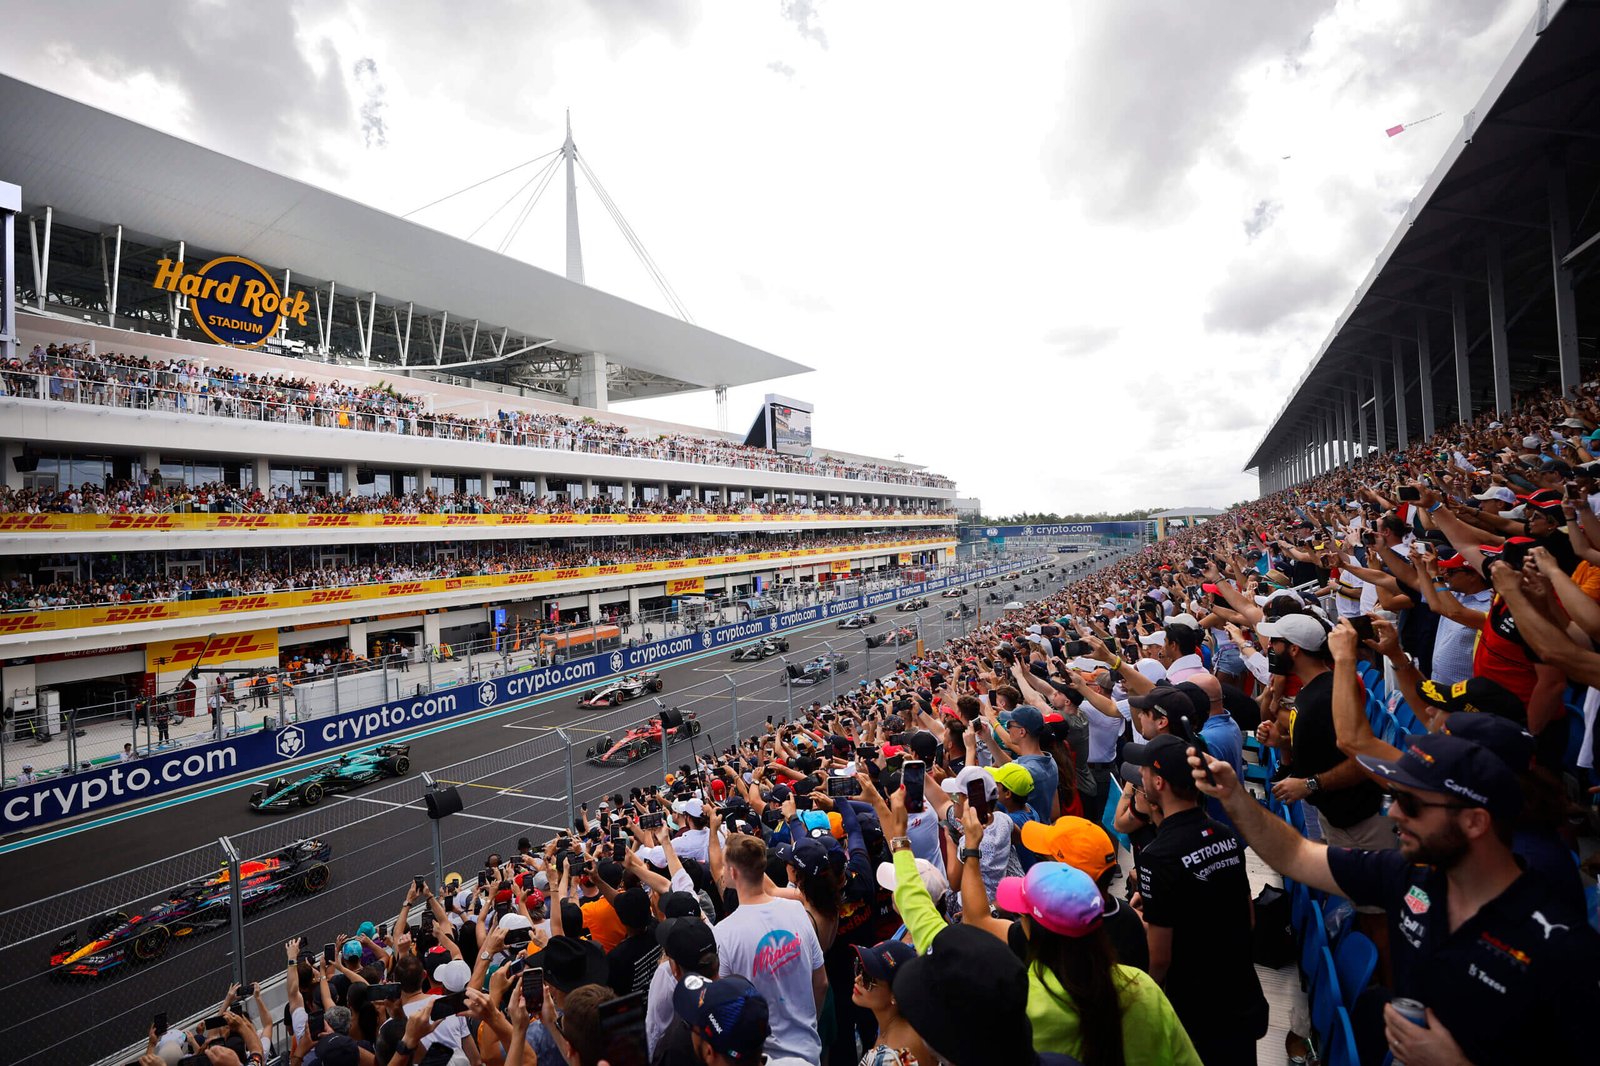 Preview do GP de Miami: Fórmula 1 arrisca Sprint na busca por emoção